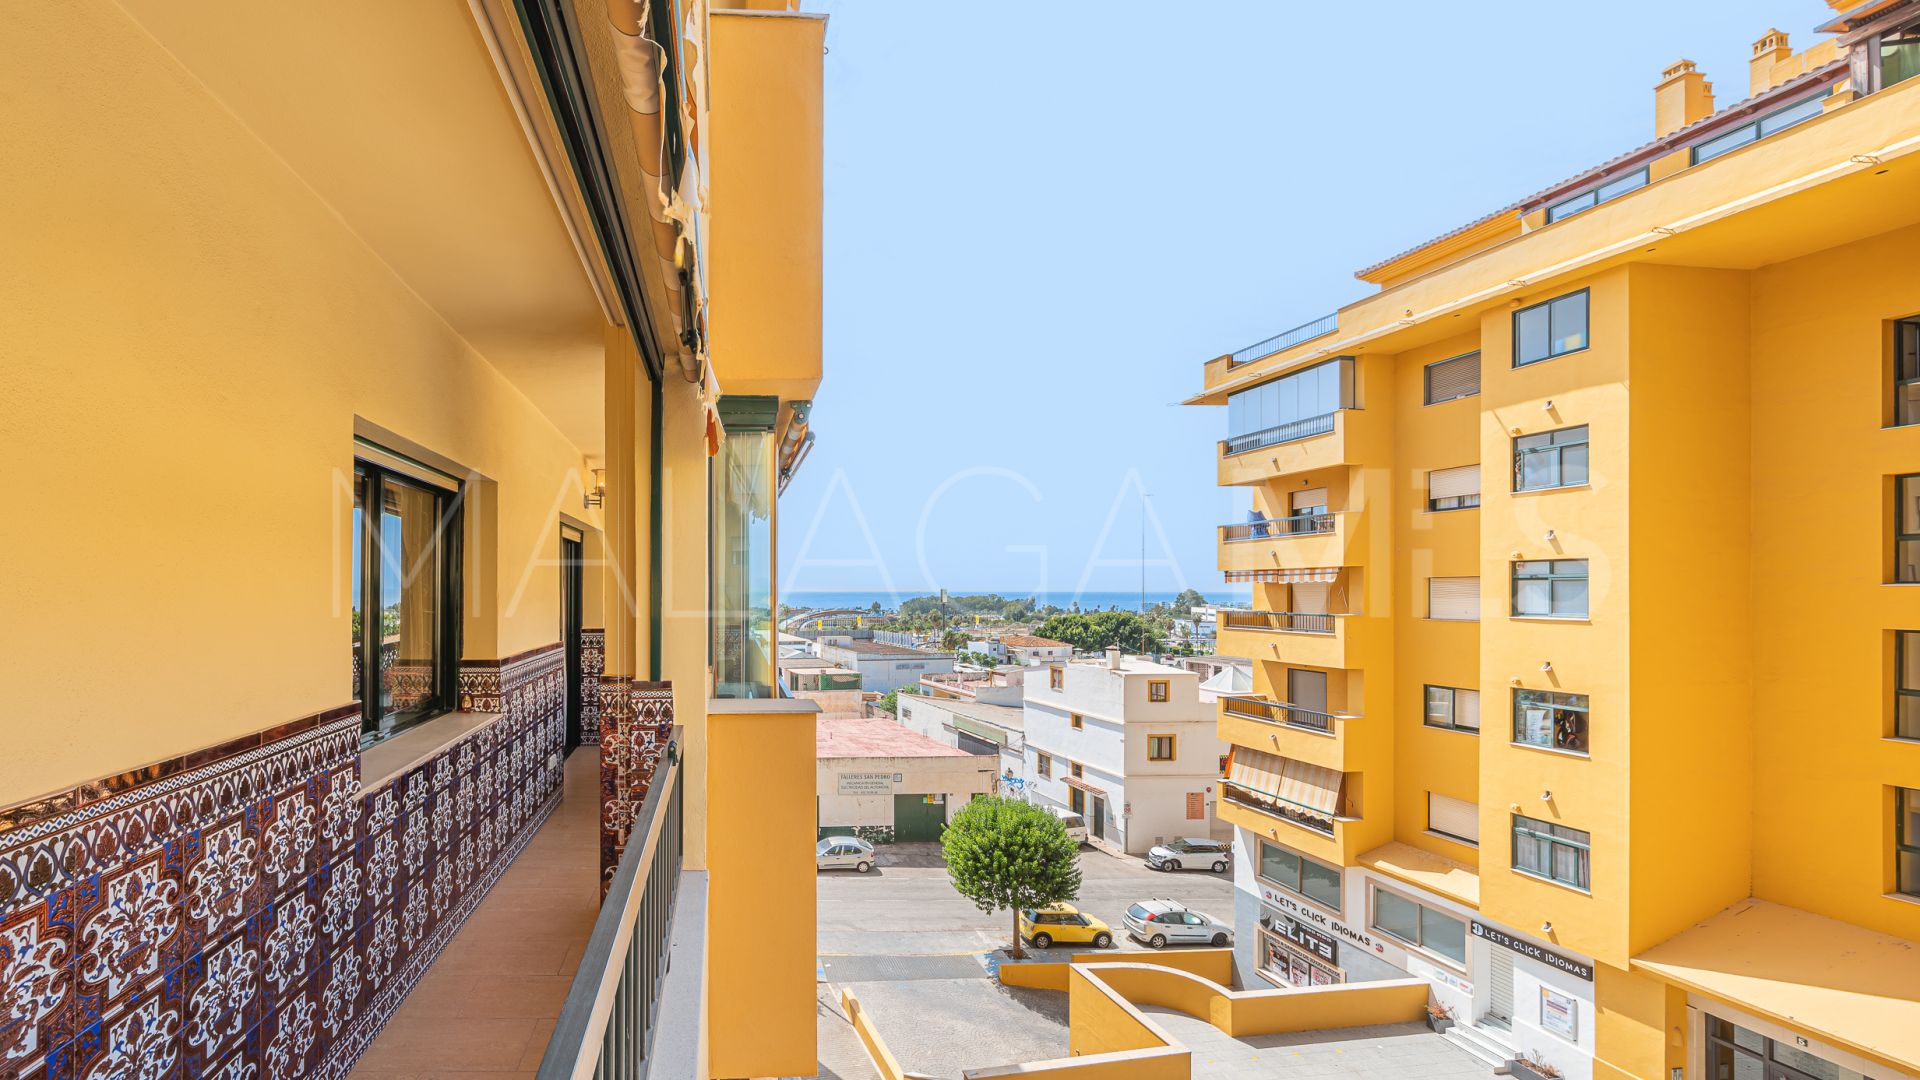 Lägenhet for sale in Guadalcantara